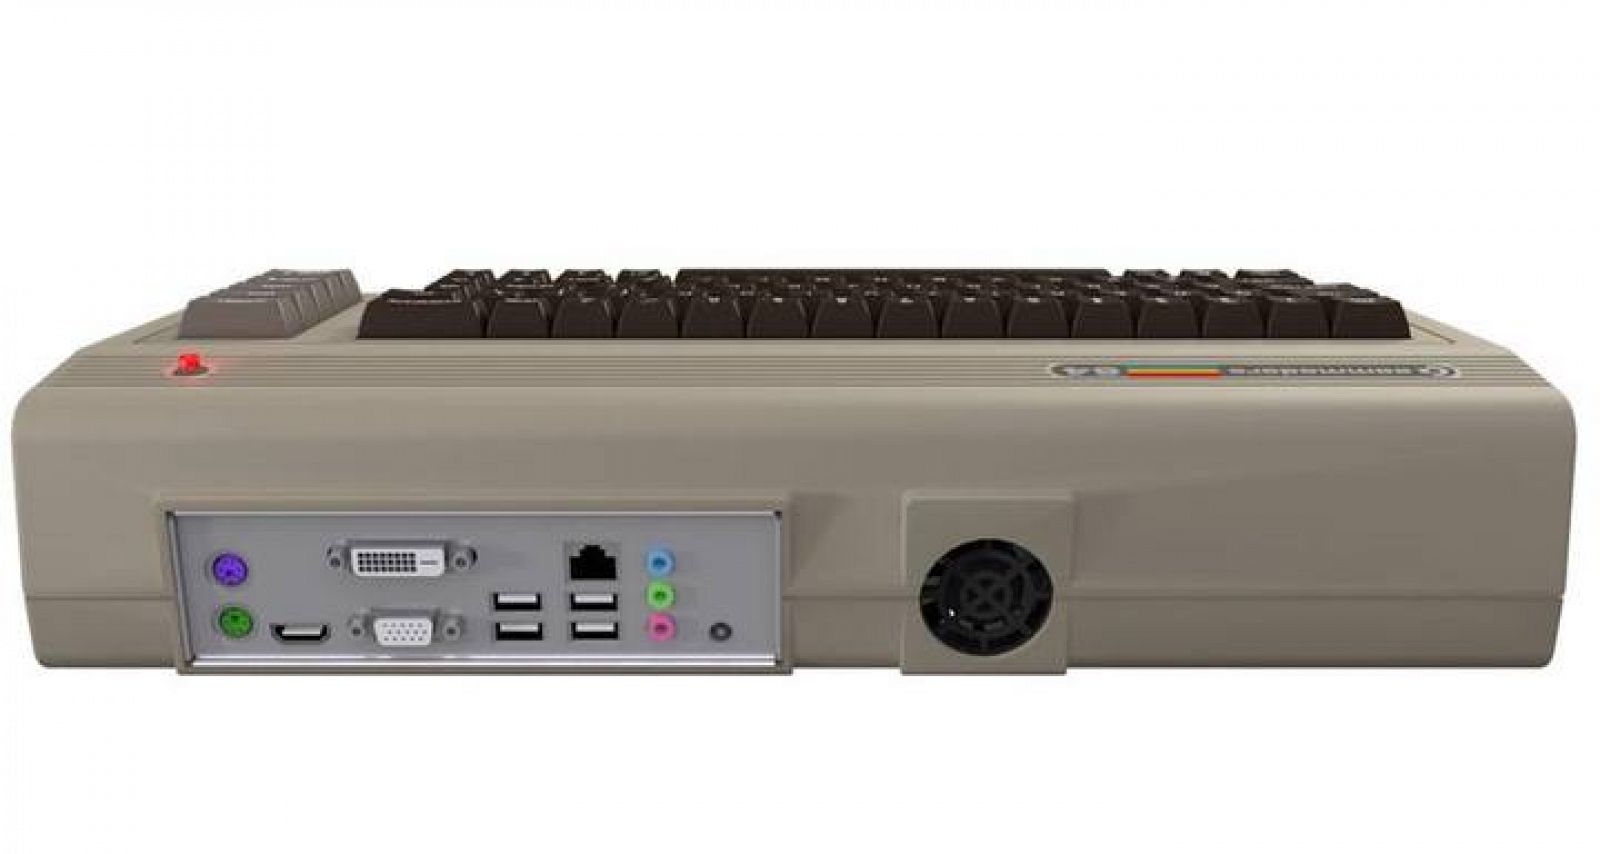 El renovado C-64 cuenta con 2 GB de RAM ampliables a 4 GB, lector DVD o Blu-Ray, USB y HDMI, entre otros